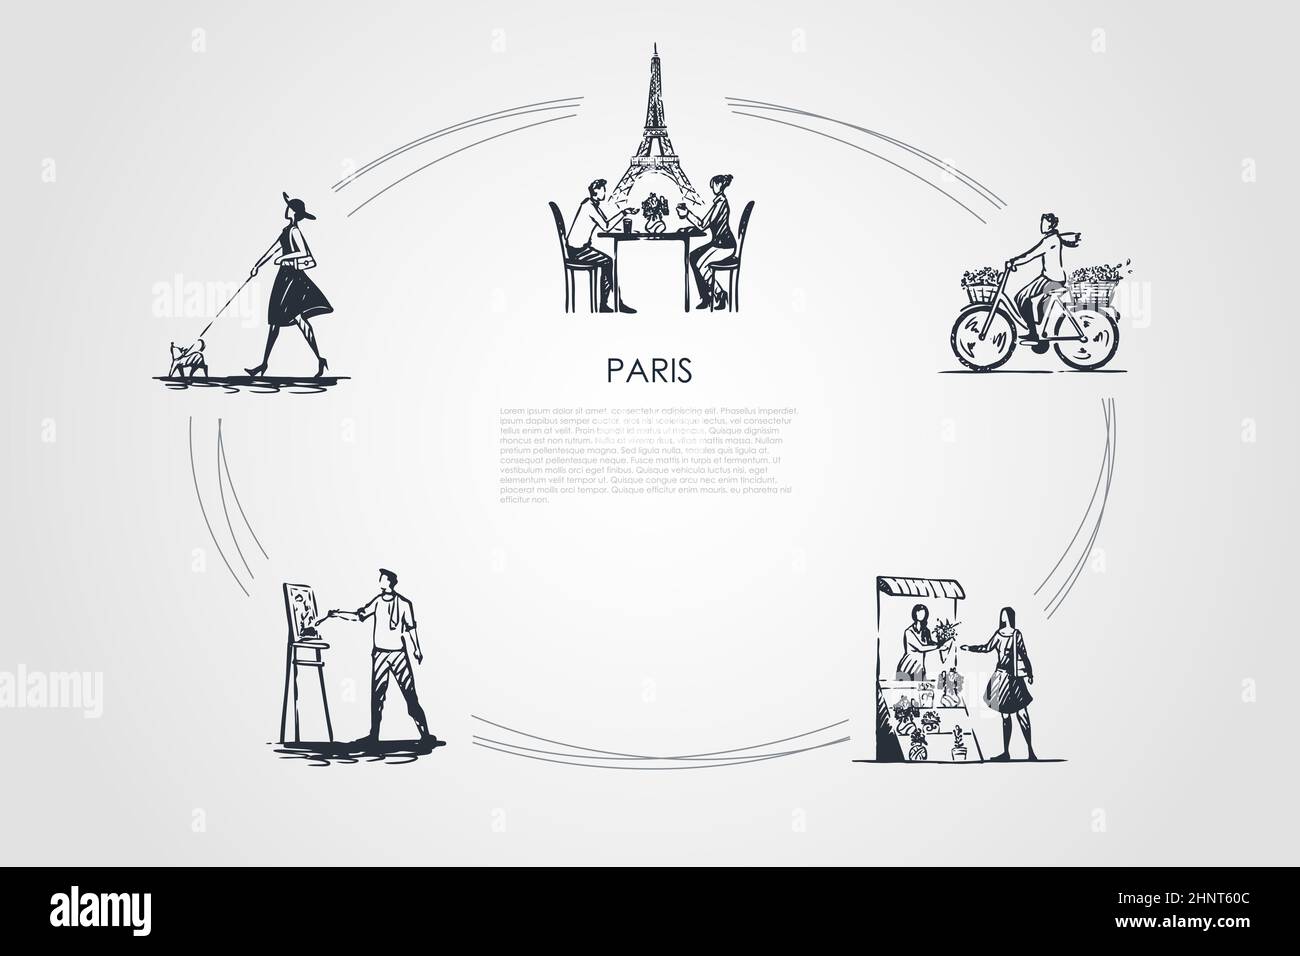 Paris - Menschen Fahrrad fahren, Kaffee trinken mit Eiffel Handtuch hinter,  malen, kaufen Blumen, Walking Dog Vektor-Konzept-Set. Handgezeichnete  Skizze i Stockfotografie - Alamy